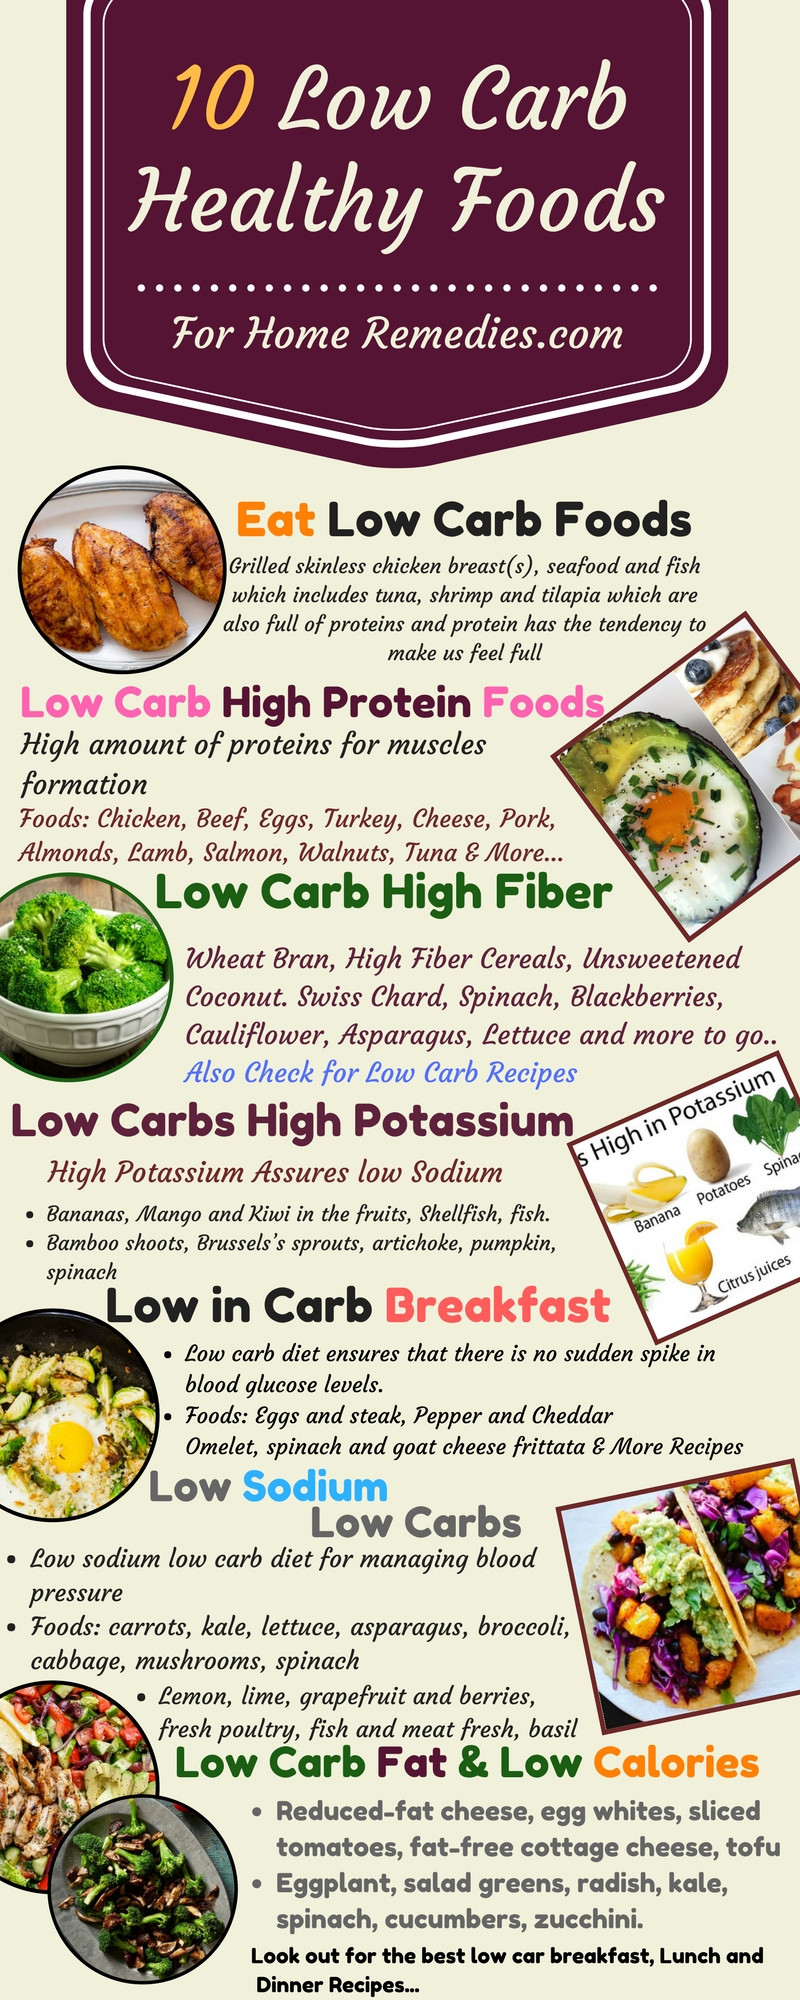 Low Fat High Fiber Recipes
 10 Low Carb Foods Low Fat Sugar High Protein Fiber